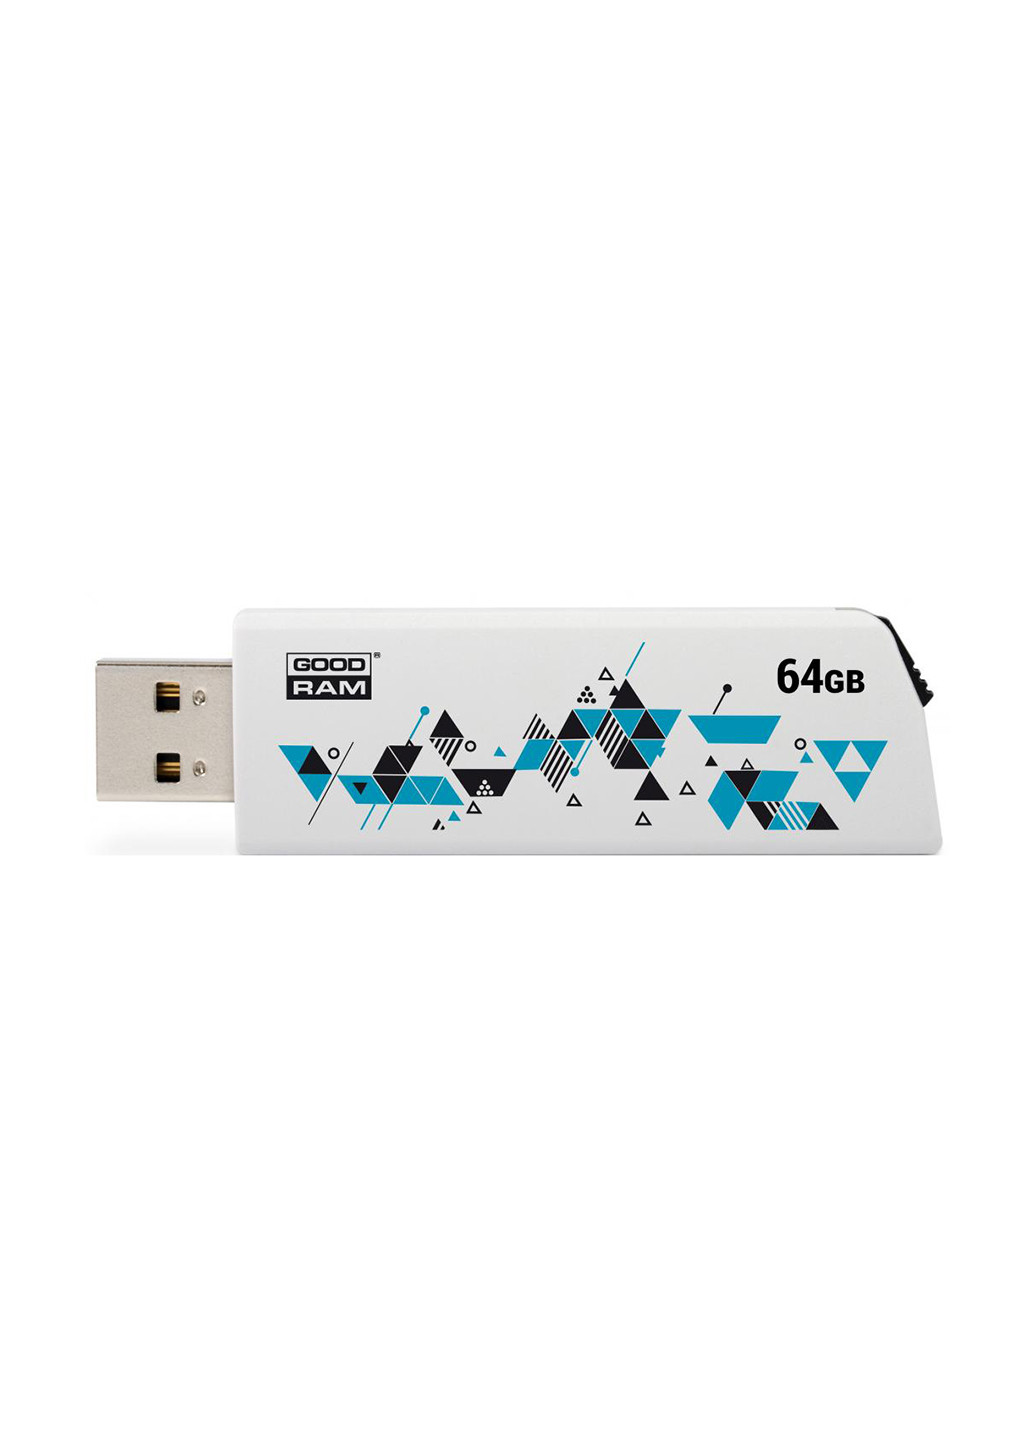 Флеш память USB 64GB USB 2.0 (UCL2-0640W0R11) White Goodram флеш память usb goodram 64gb usb 2.0 (ucl2-0640w0r11) white (142457621)